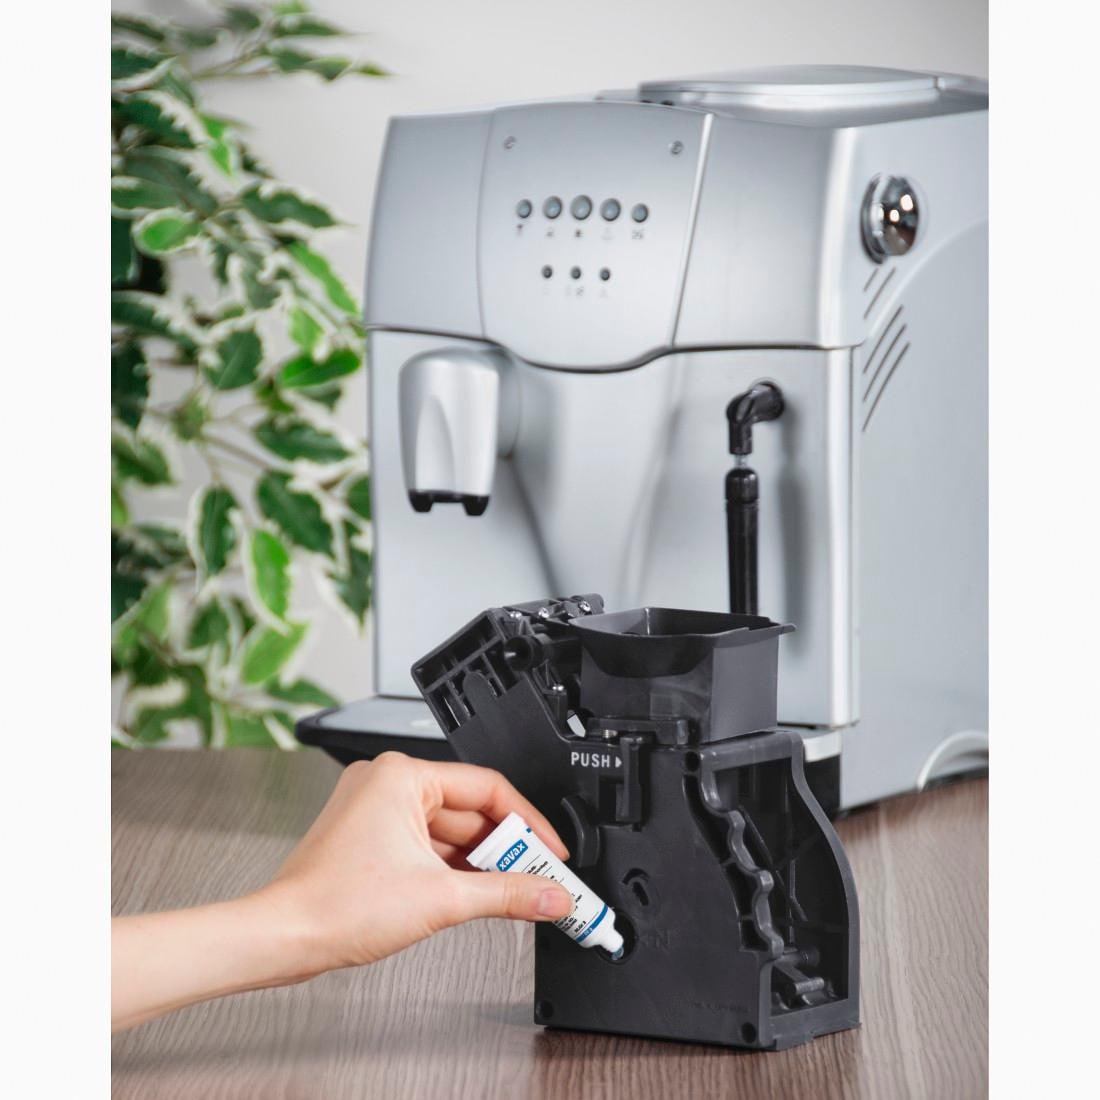 Xavax Schmierfett, zur Pflege von Kaffeevollautomaten, Armaturen und Dichtungen